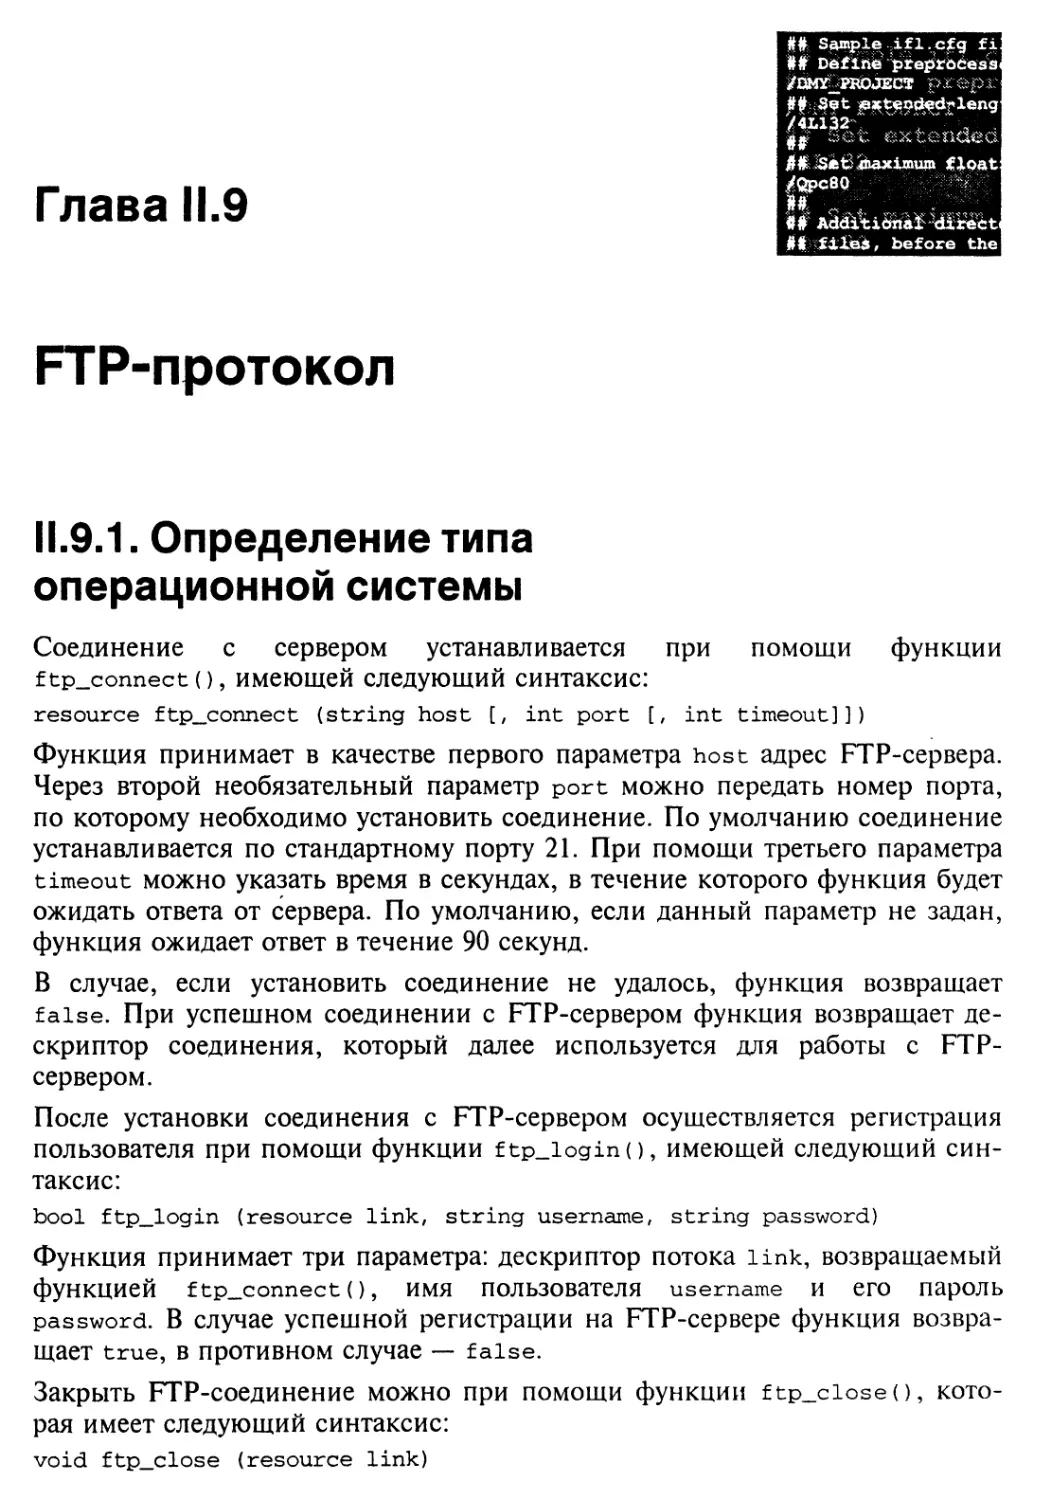 Глава II.9. FTP-протокол